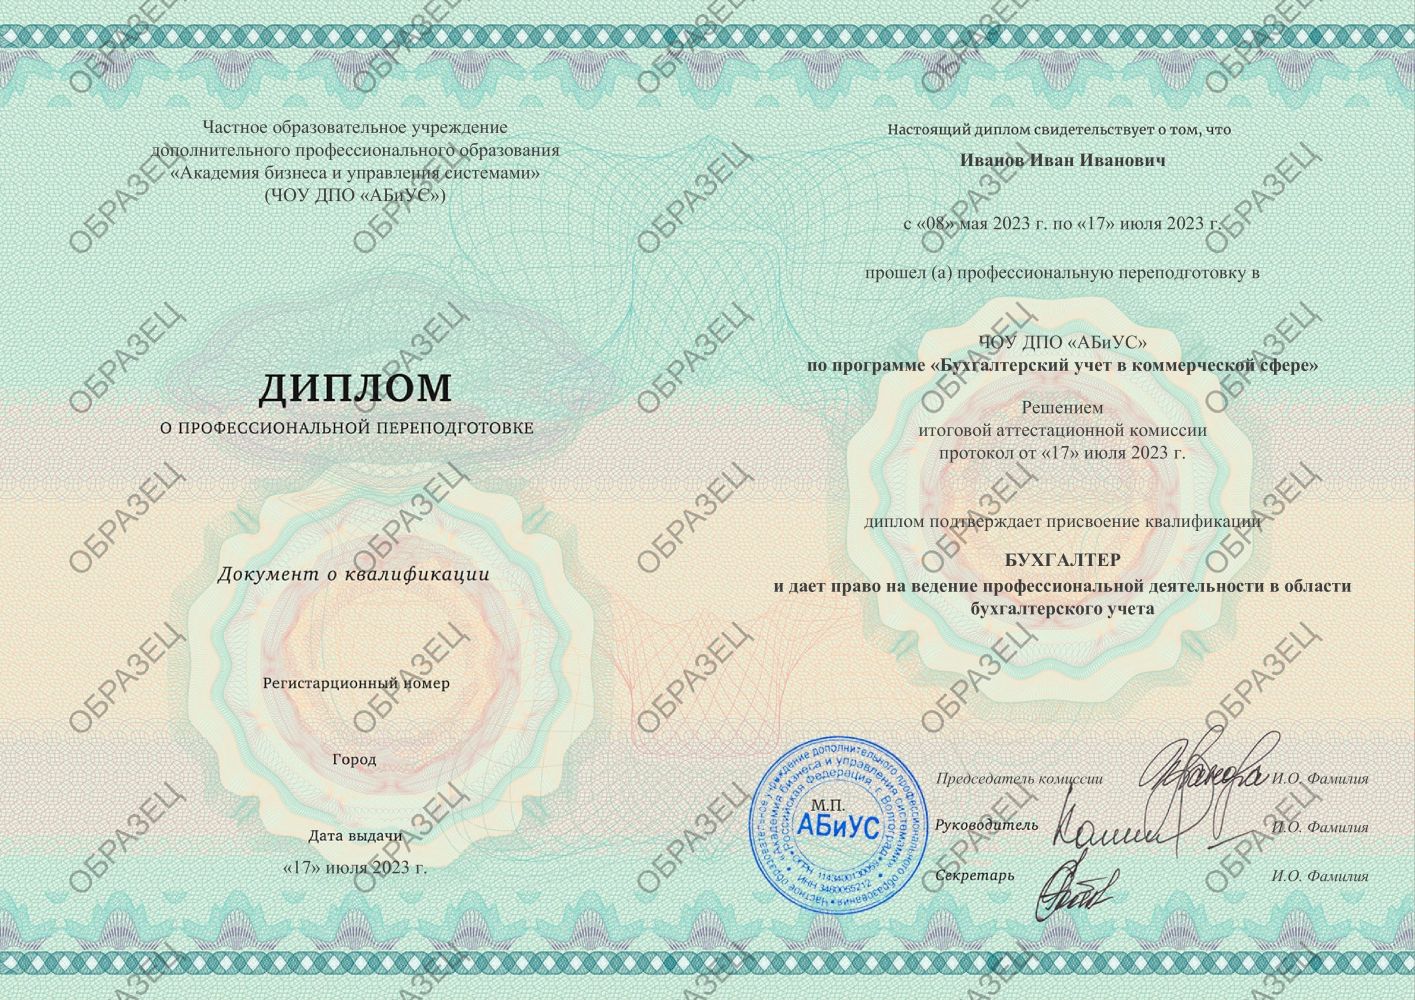 Диплом Бухгалтерский учет в коммерческой сфере 260 часов 12313 руб.